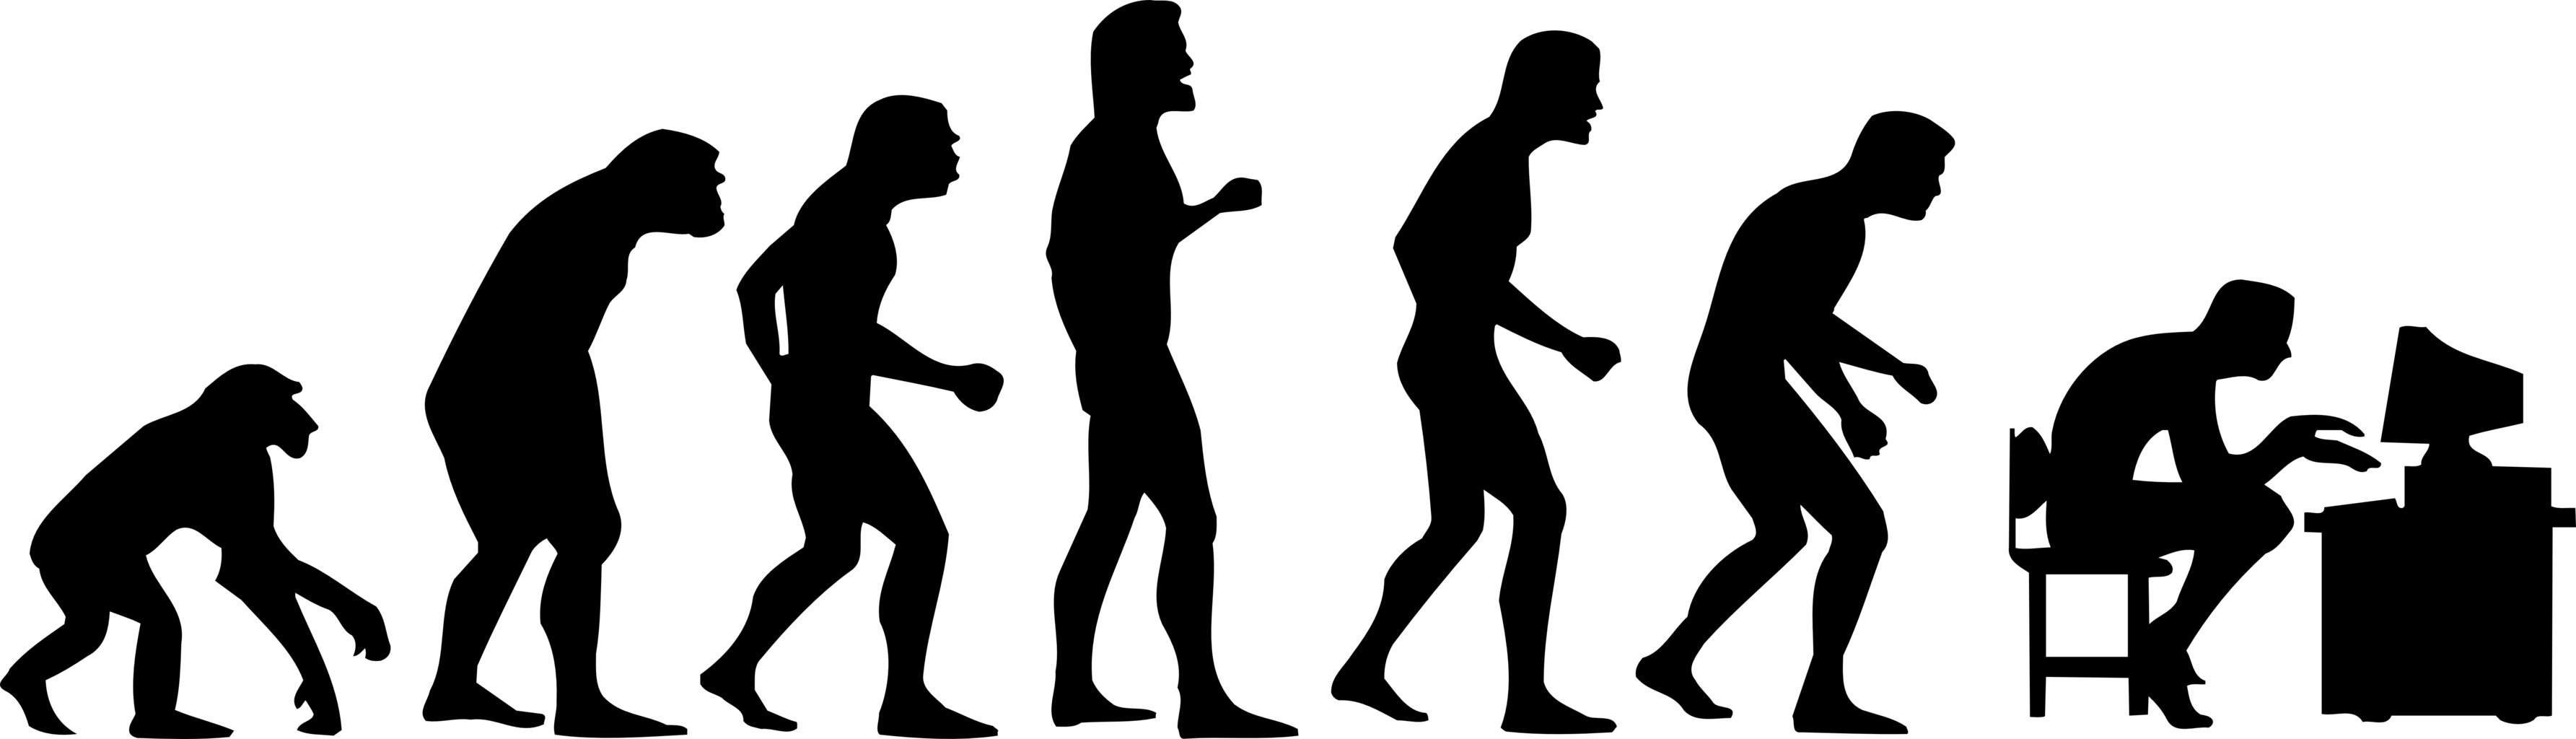 В деле прогресса человечества. Эволюция человека. От обезьяны до человека. Эволюция человека от обезьяны. Развитие человека.